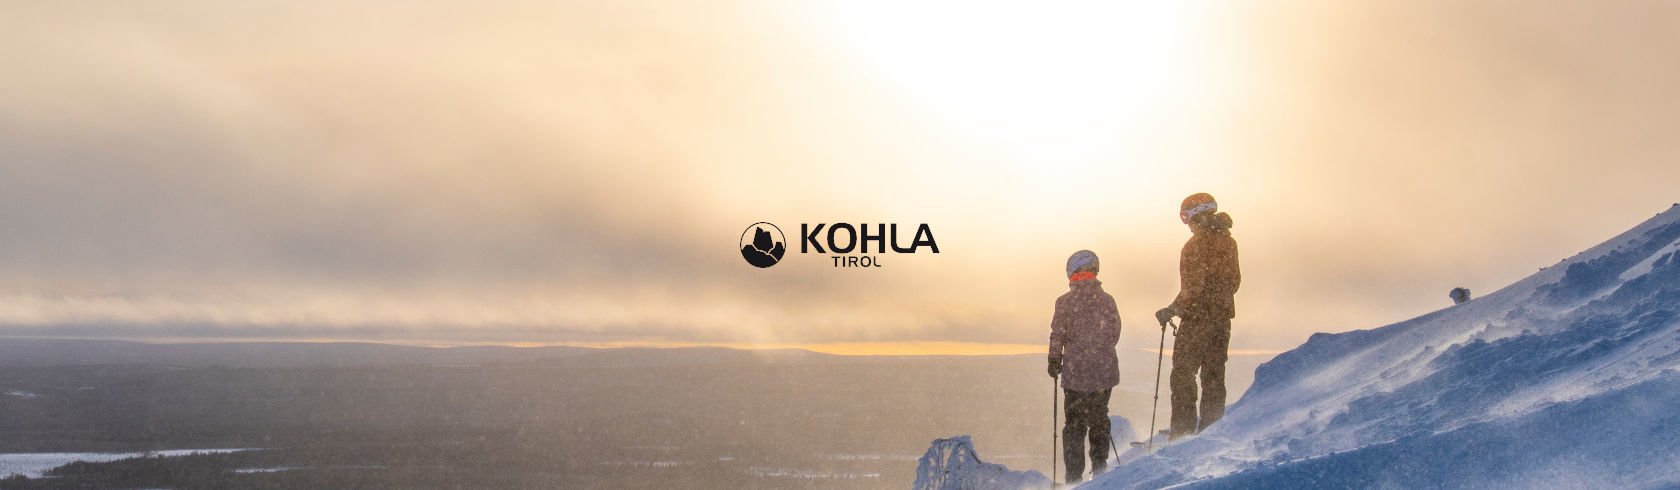 Kohla brand logo